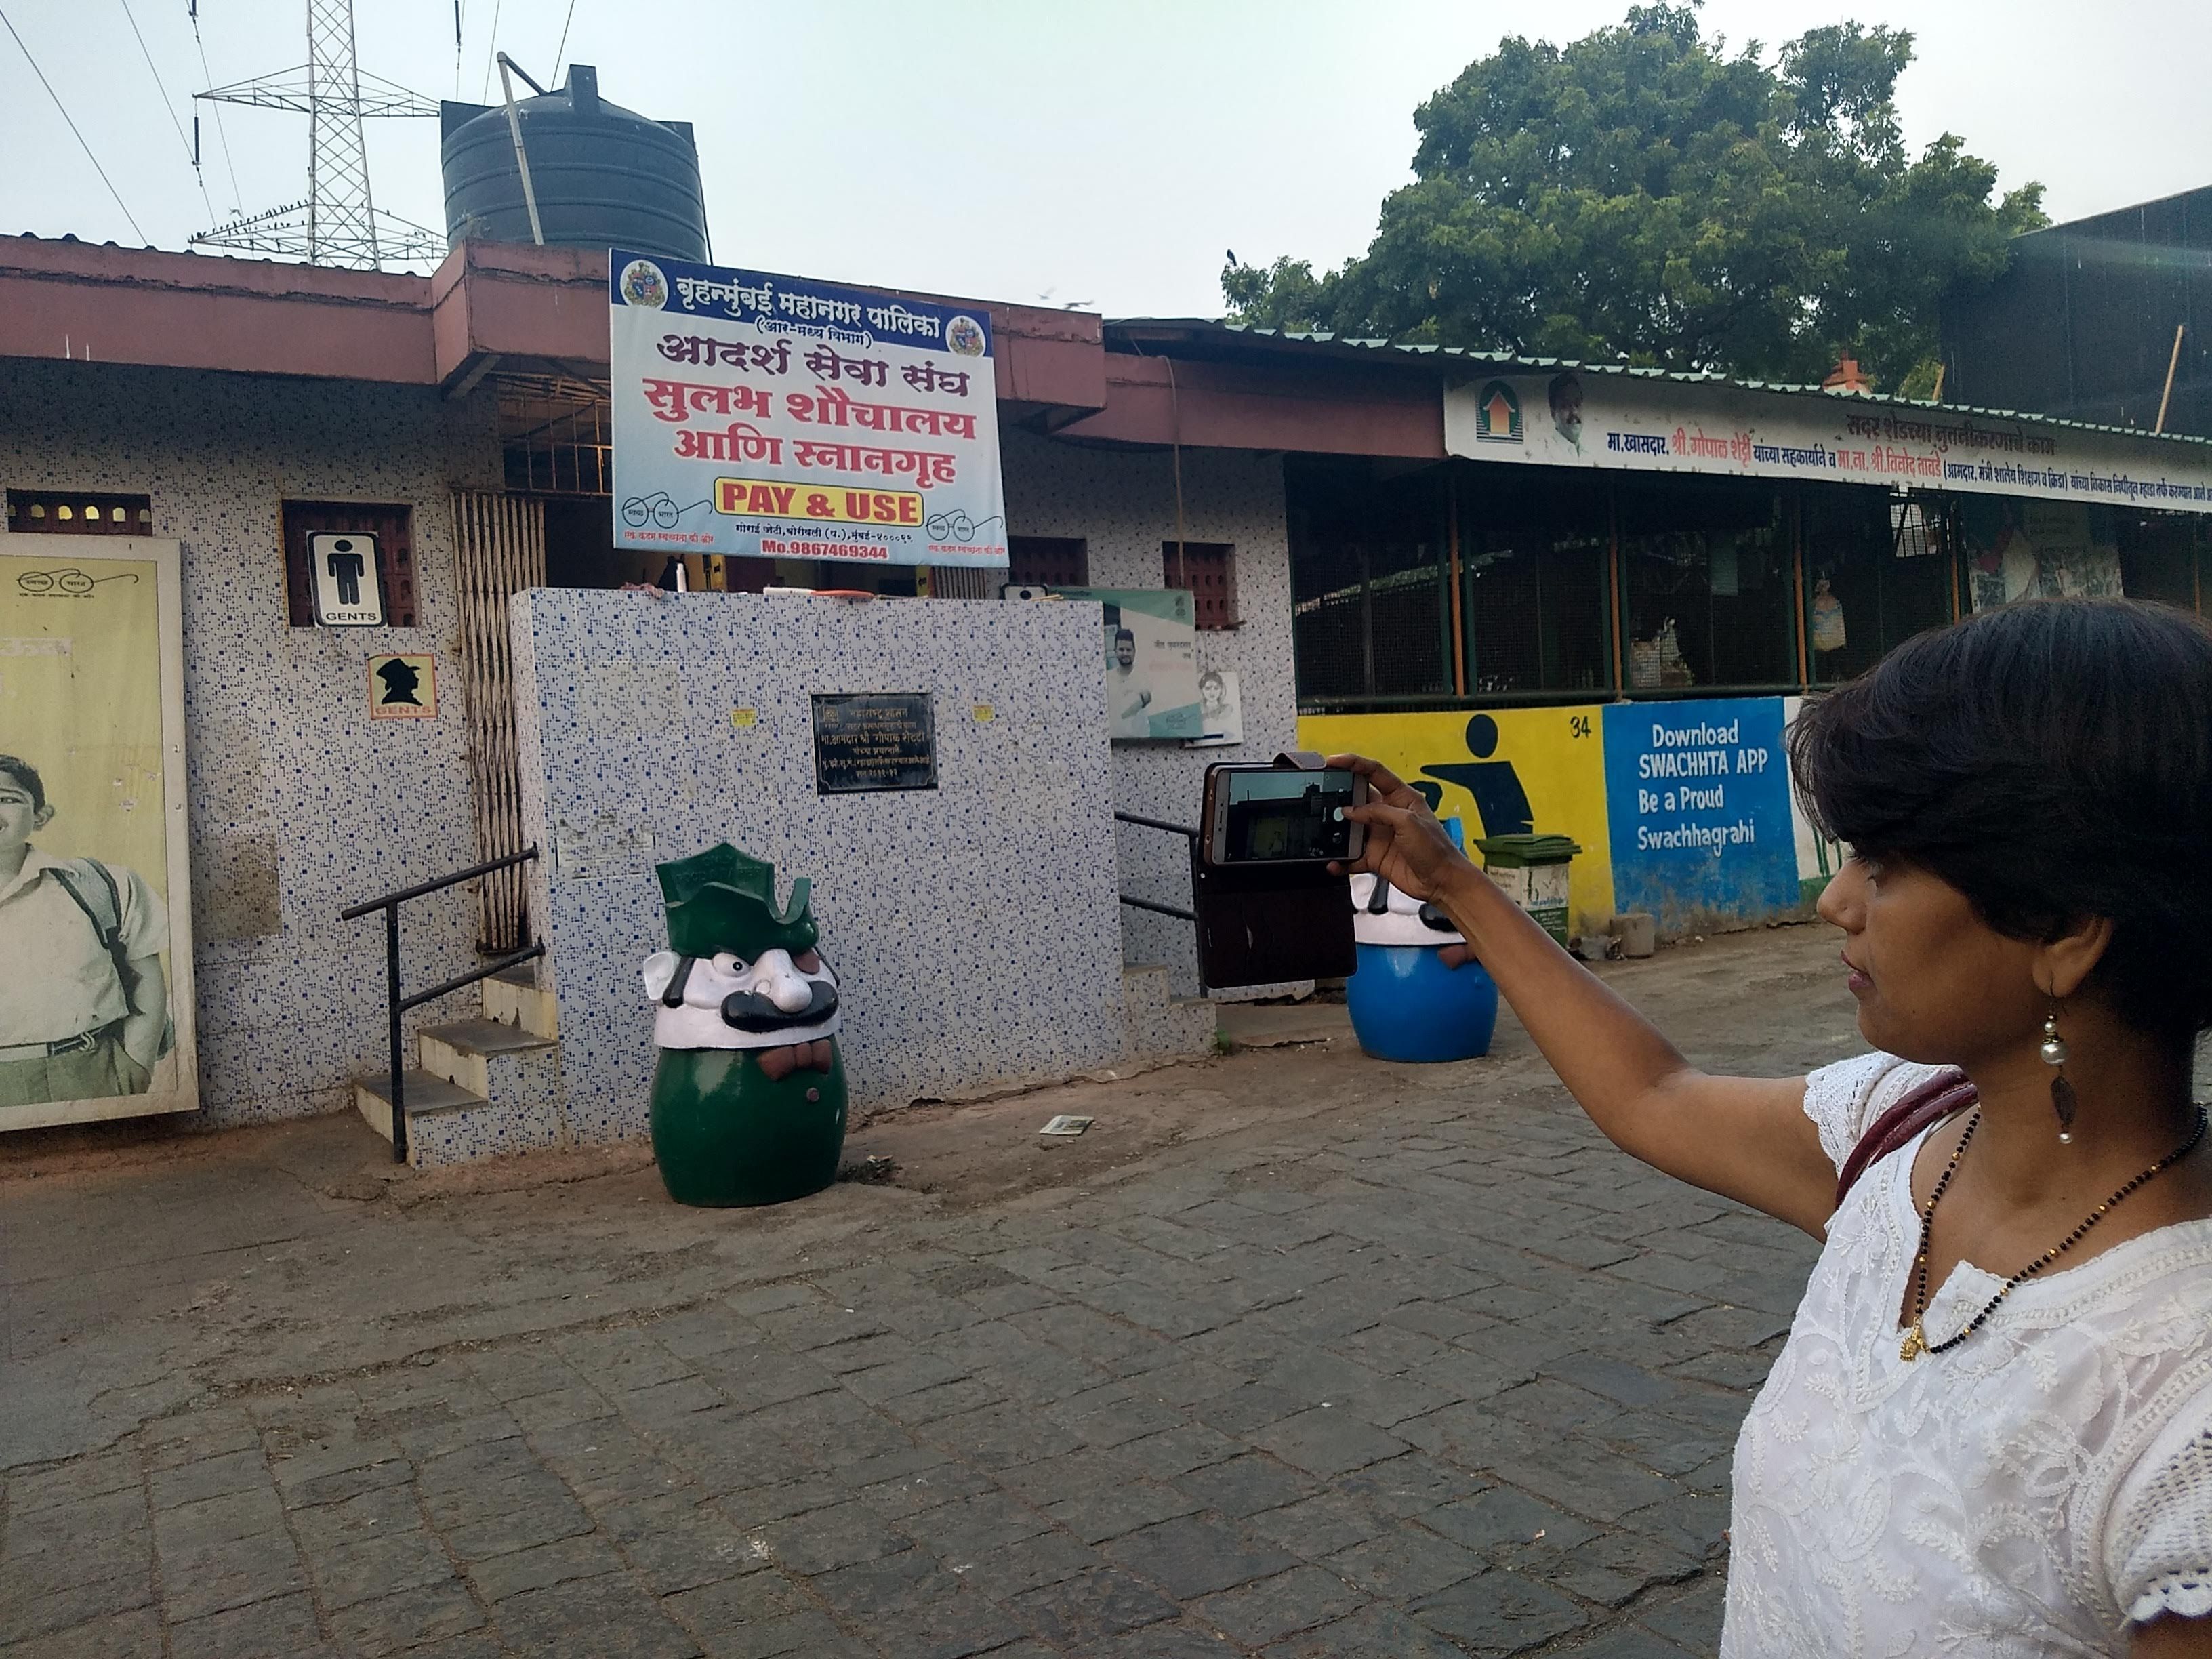 Shruti mapping the mumbai's toilets